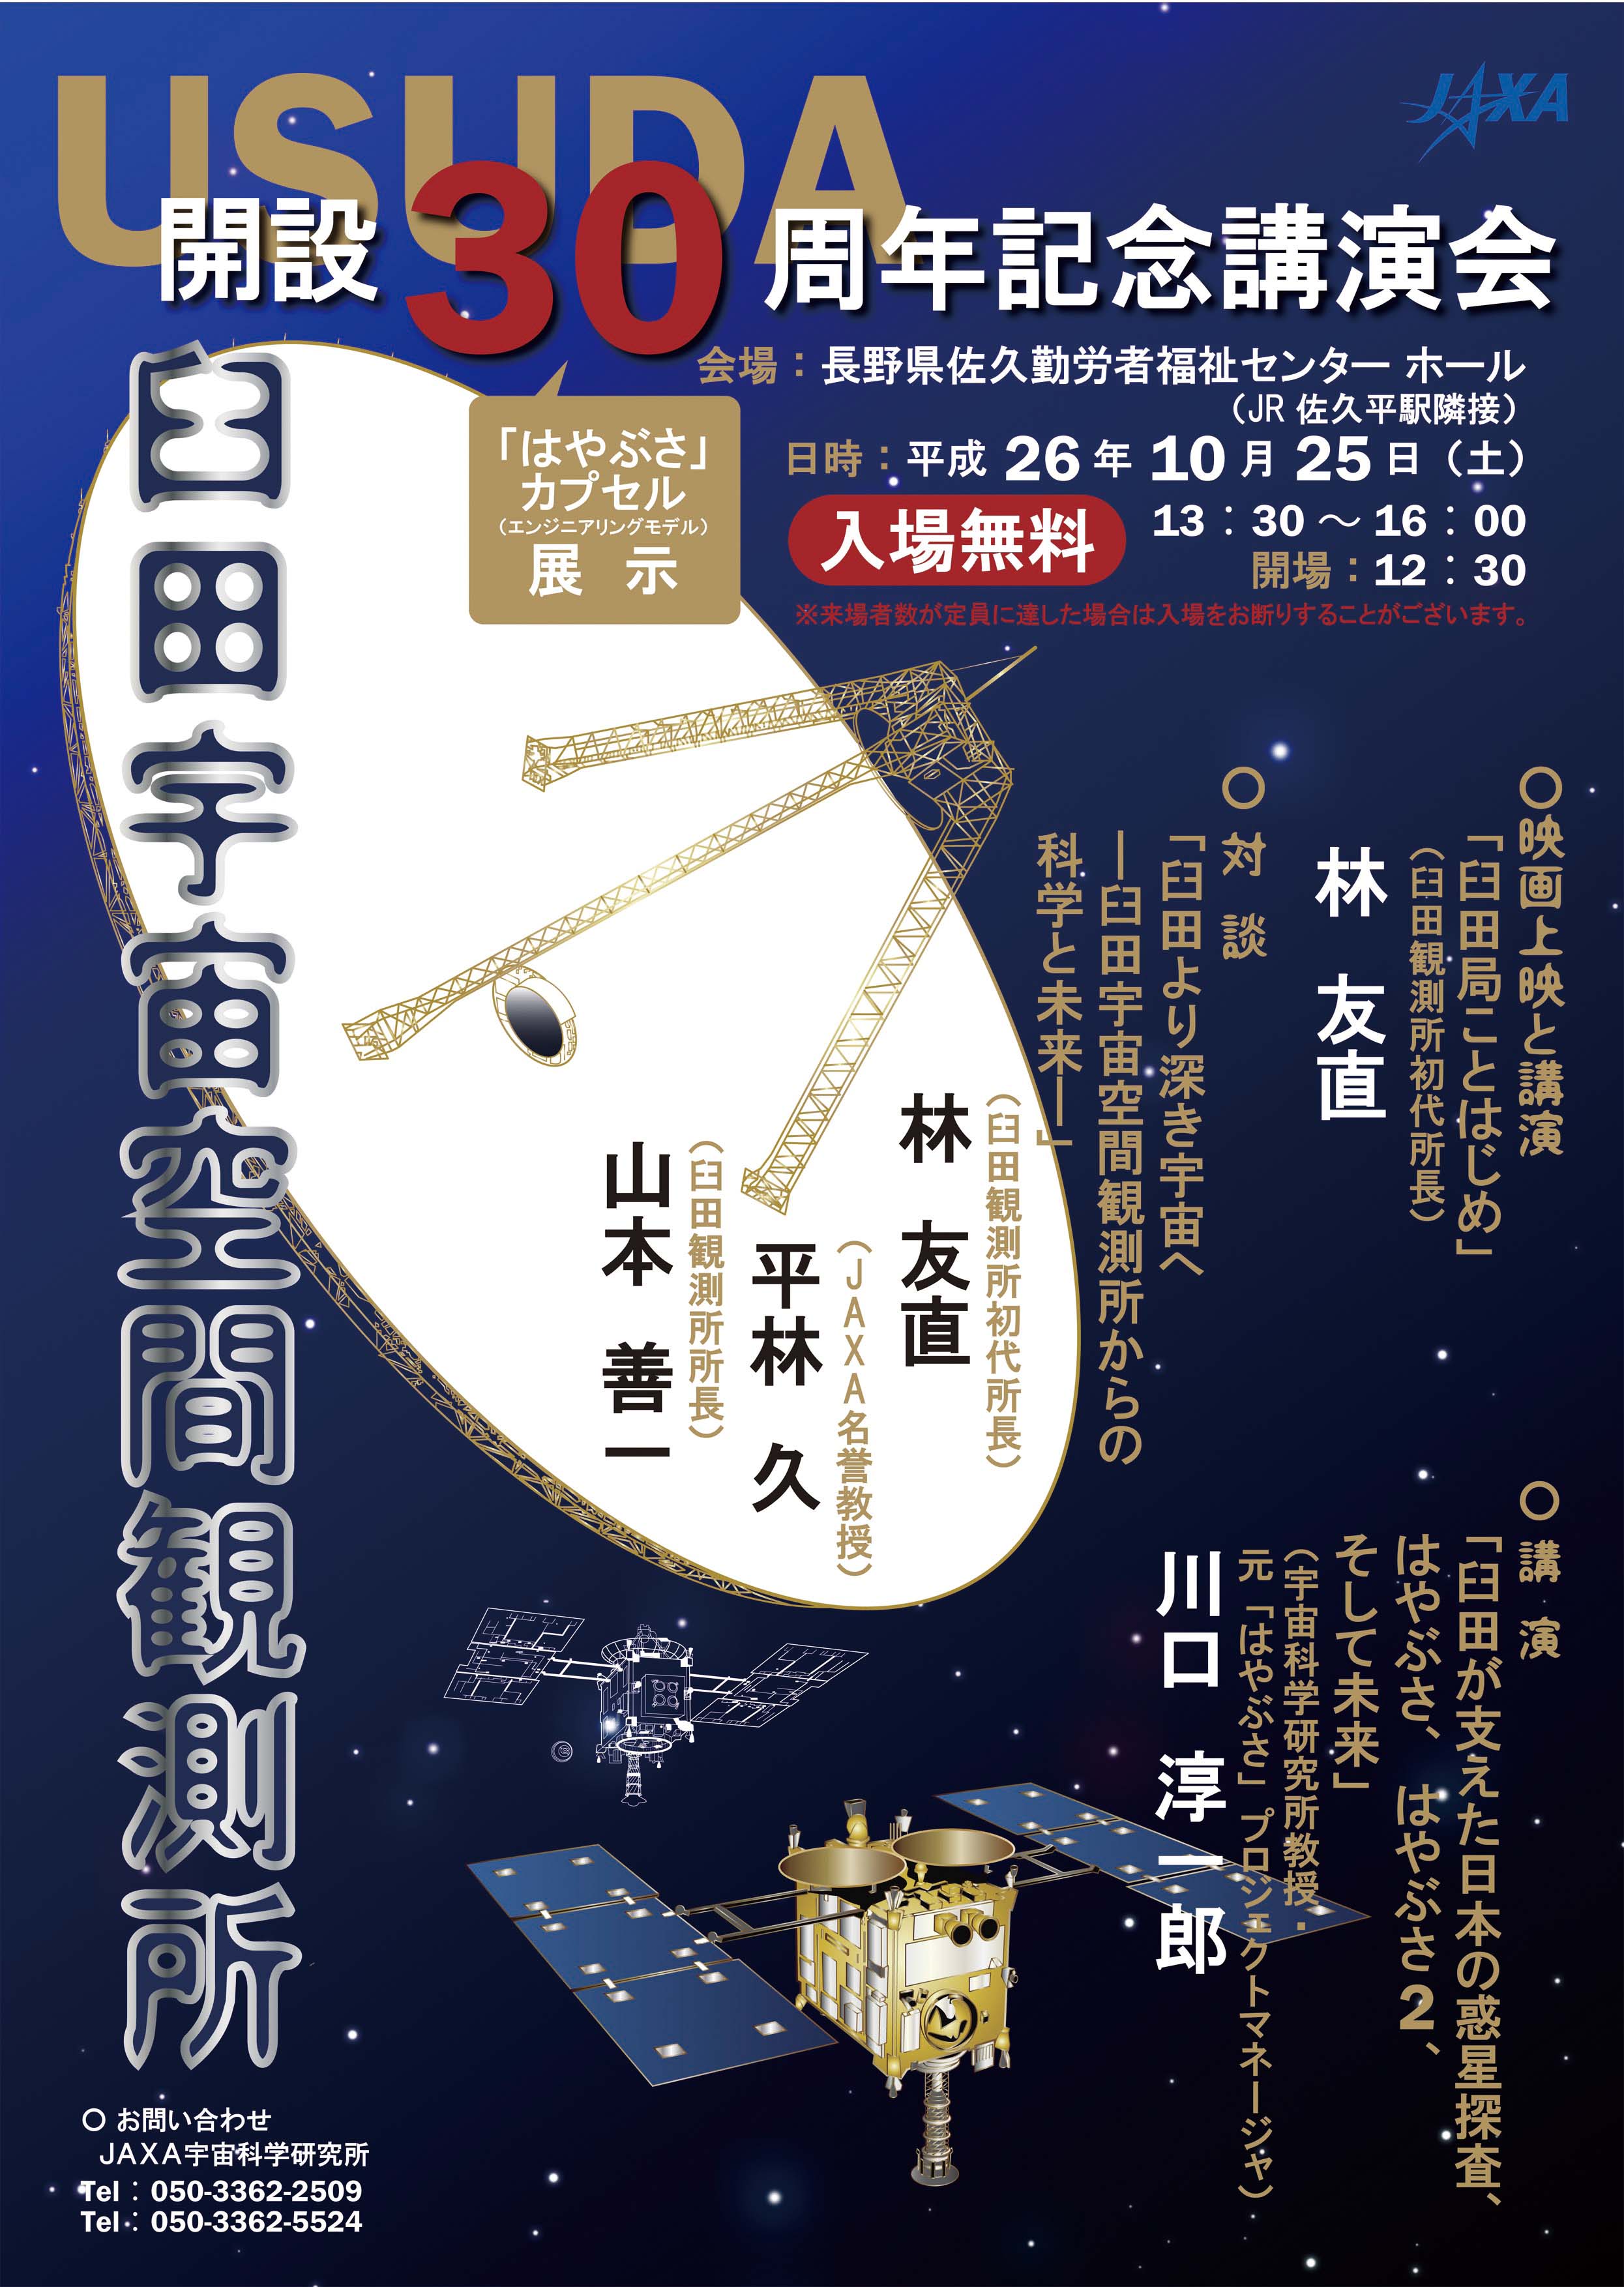 臼田宇宙空間観測所の開設30周年を記念して記念講演会が開催されます